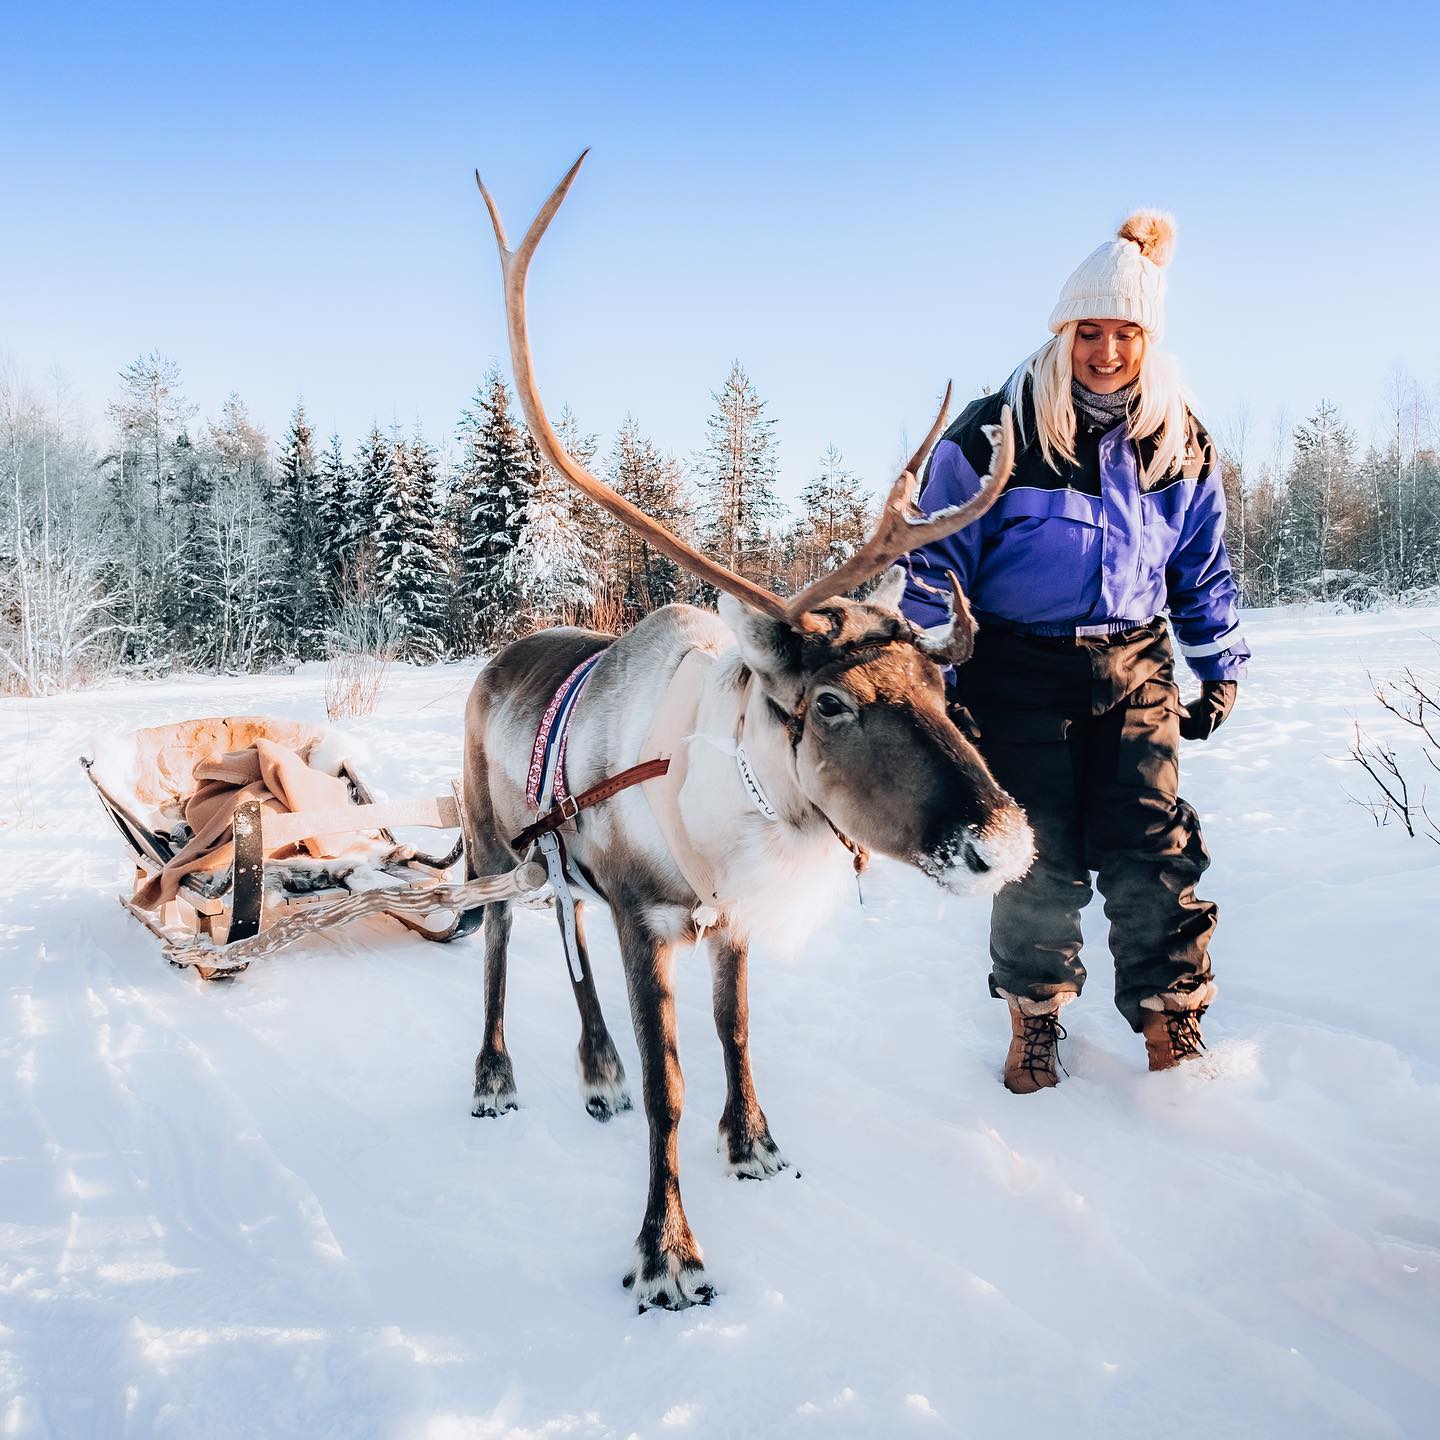 Rovaniemi được xem là ' quê hương của ông già Noel' và nổi tiếng với cảnh Bắc Cực quang Aurora Borealis hoành tráng. Ảnh: @jennie_wanders